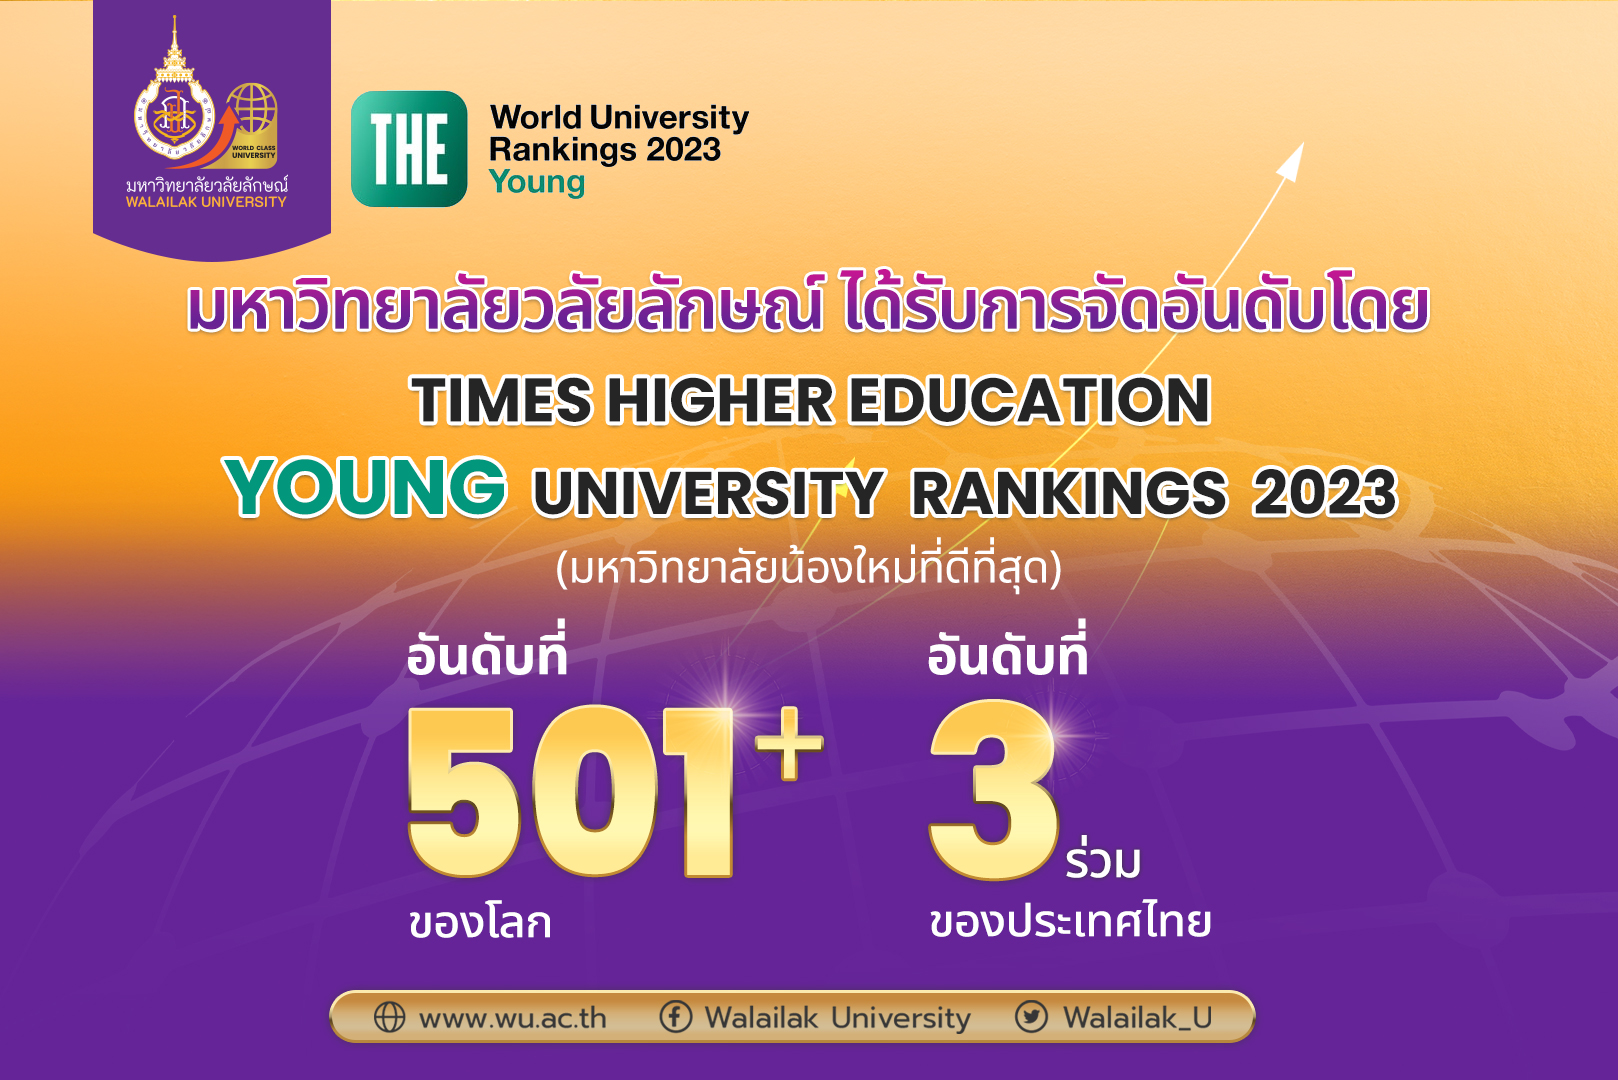 ม.วลัยลักษณ์ ปลื้มติดอันดับ 501+ของโลก การจัดอันดับ Young University  Rankings | The Center For Digital Technology